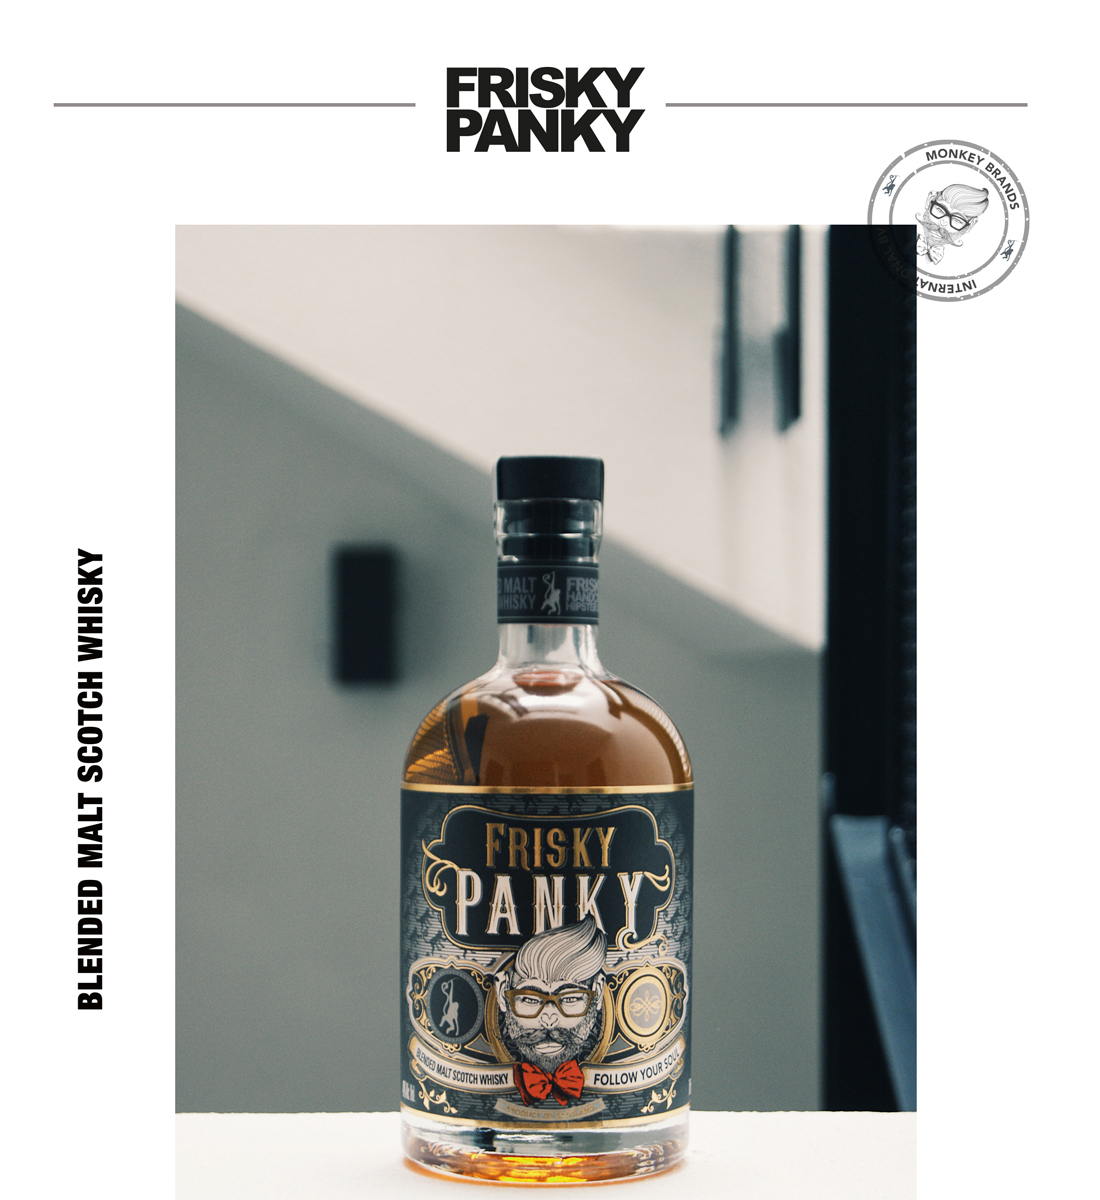 Whisky Frisky Panky Blended Malt Scotch 0.7L 0.7L